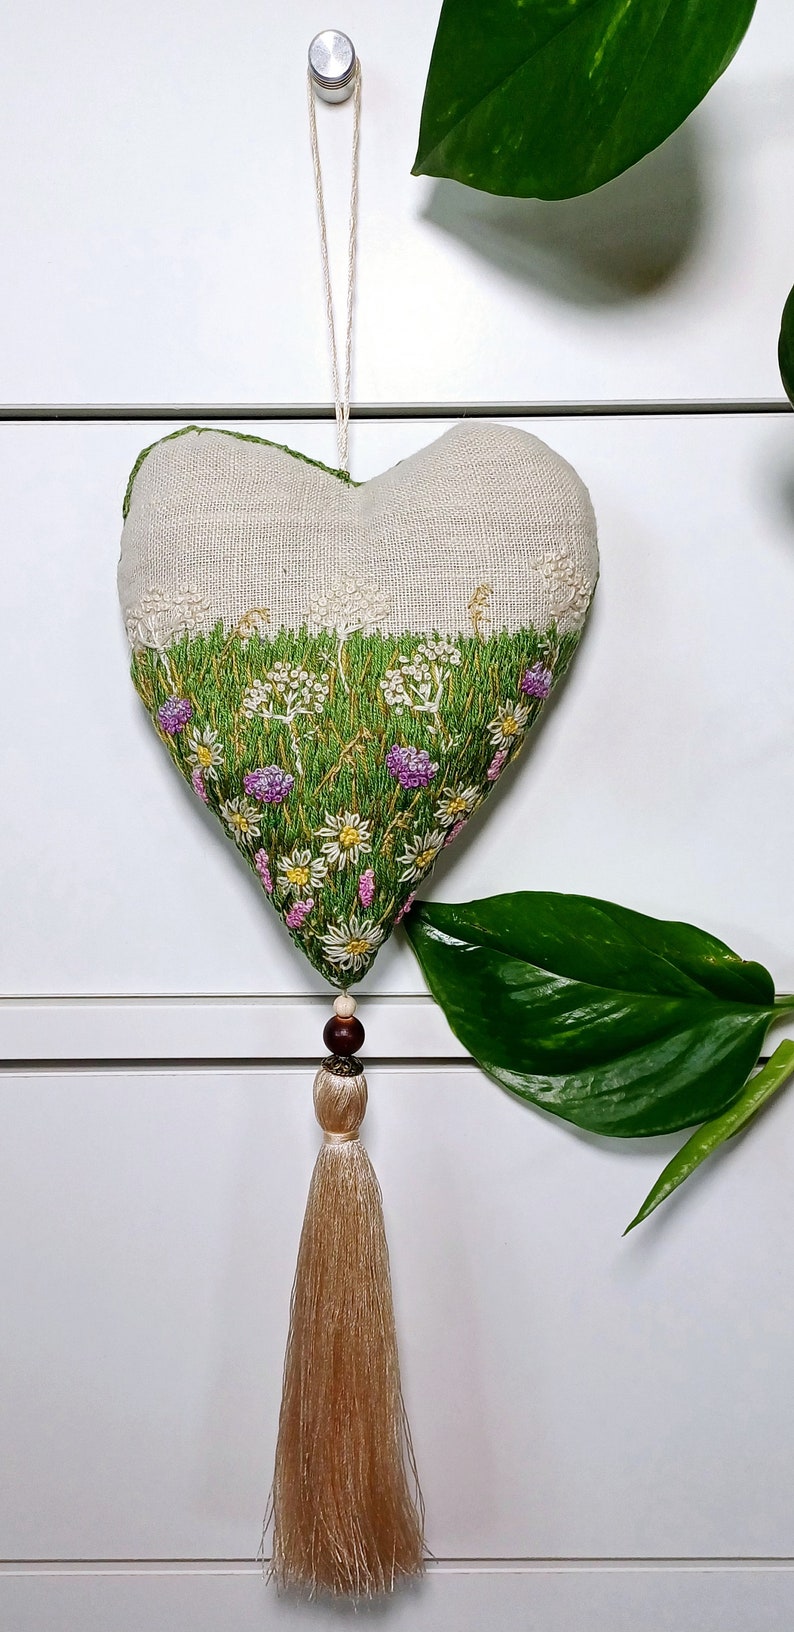 Sachet de lin fait main rempli de lavande, sachet parfumé brodé à la main, décoration d'intérieur en forme de coeur, cadeau aromatique image 4